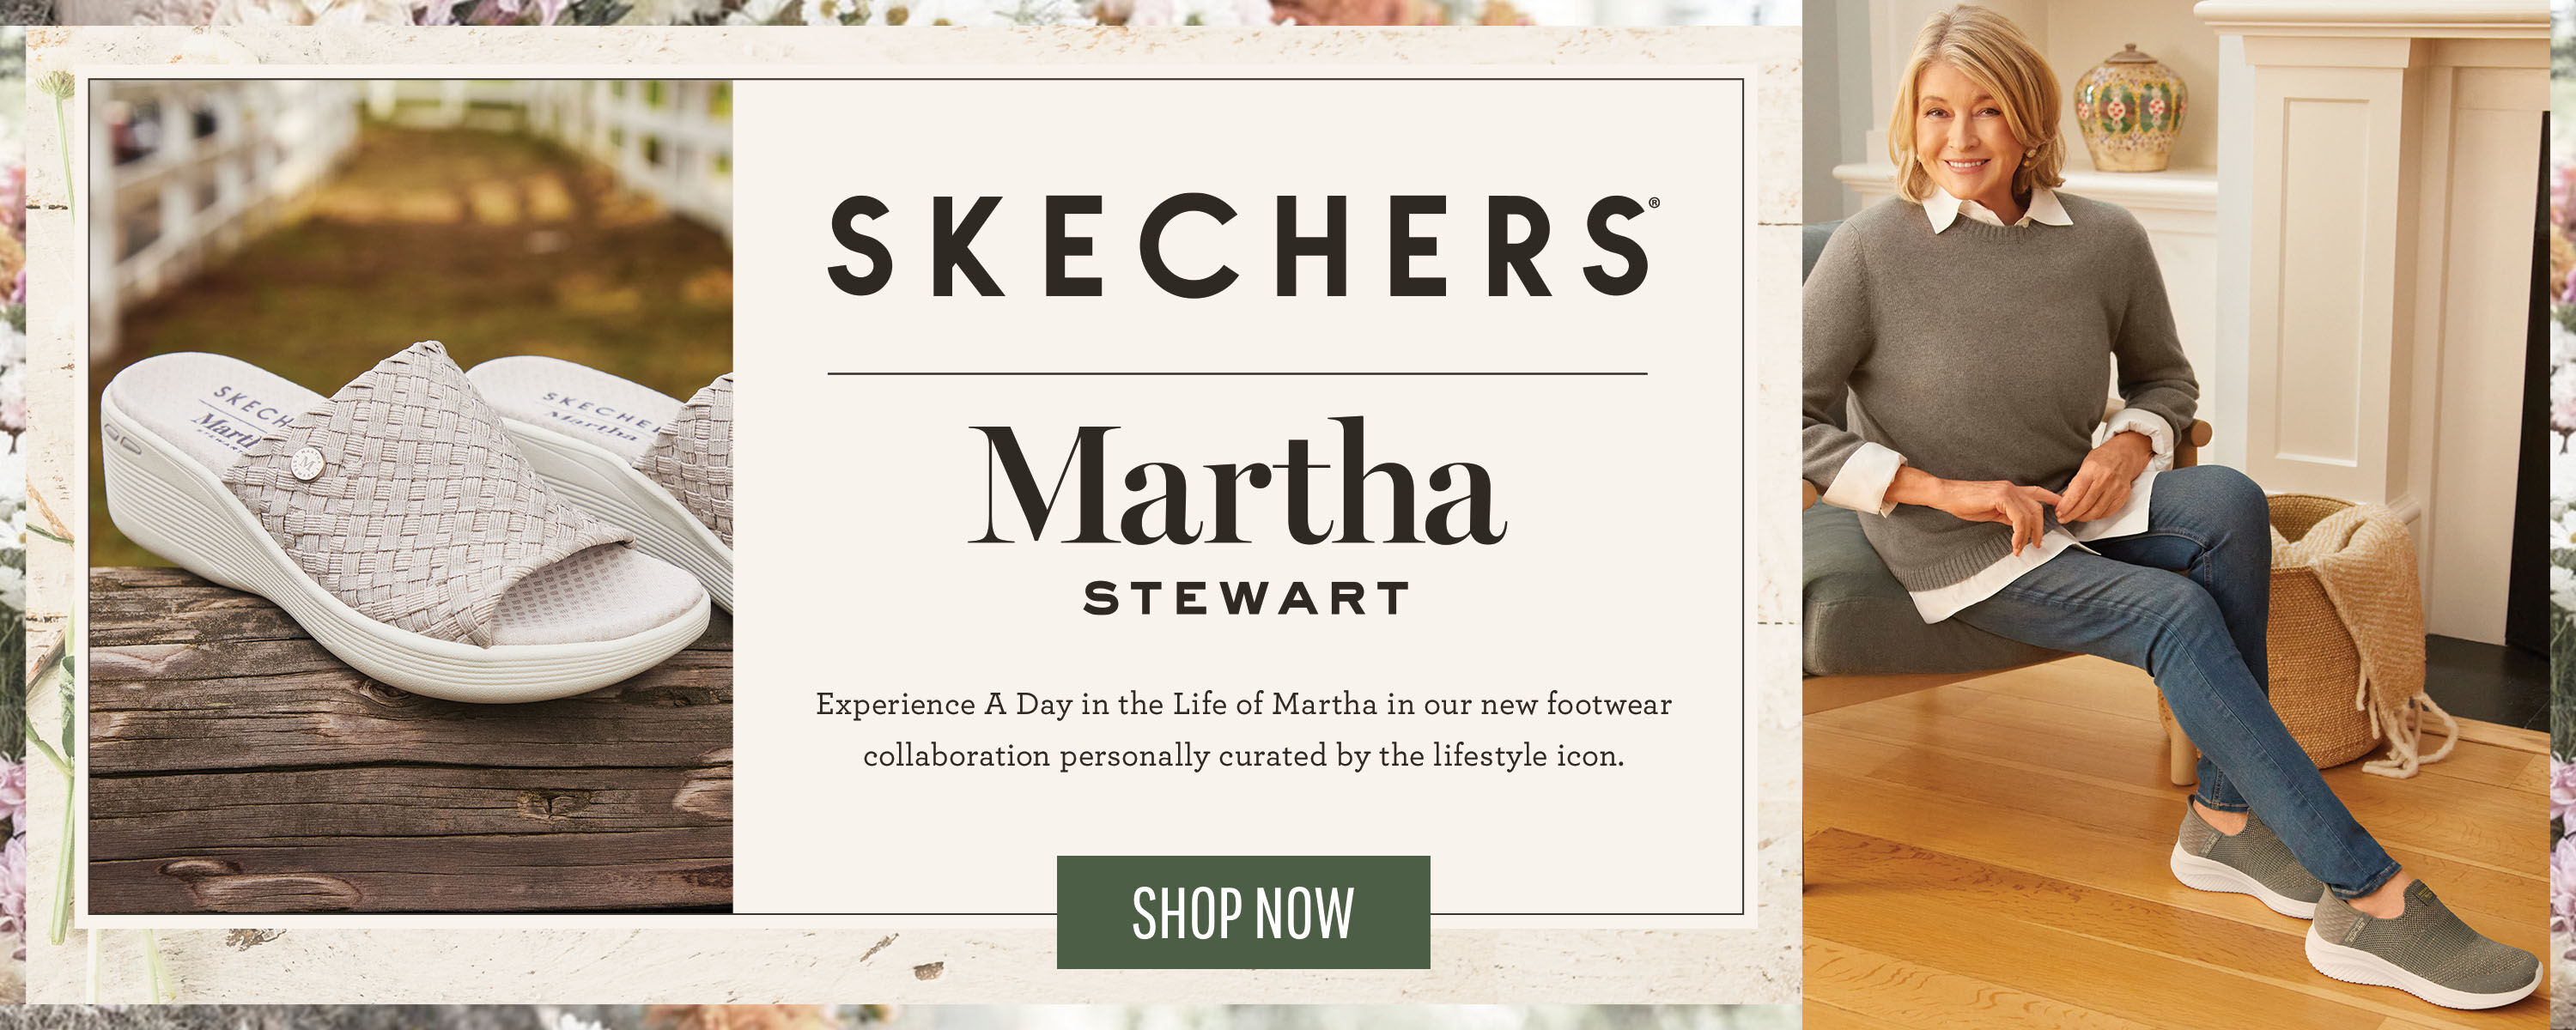 Skechers Martha Stewart